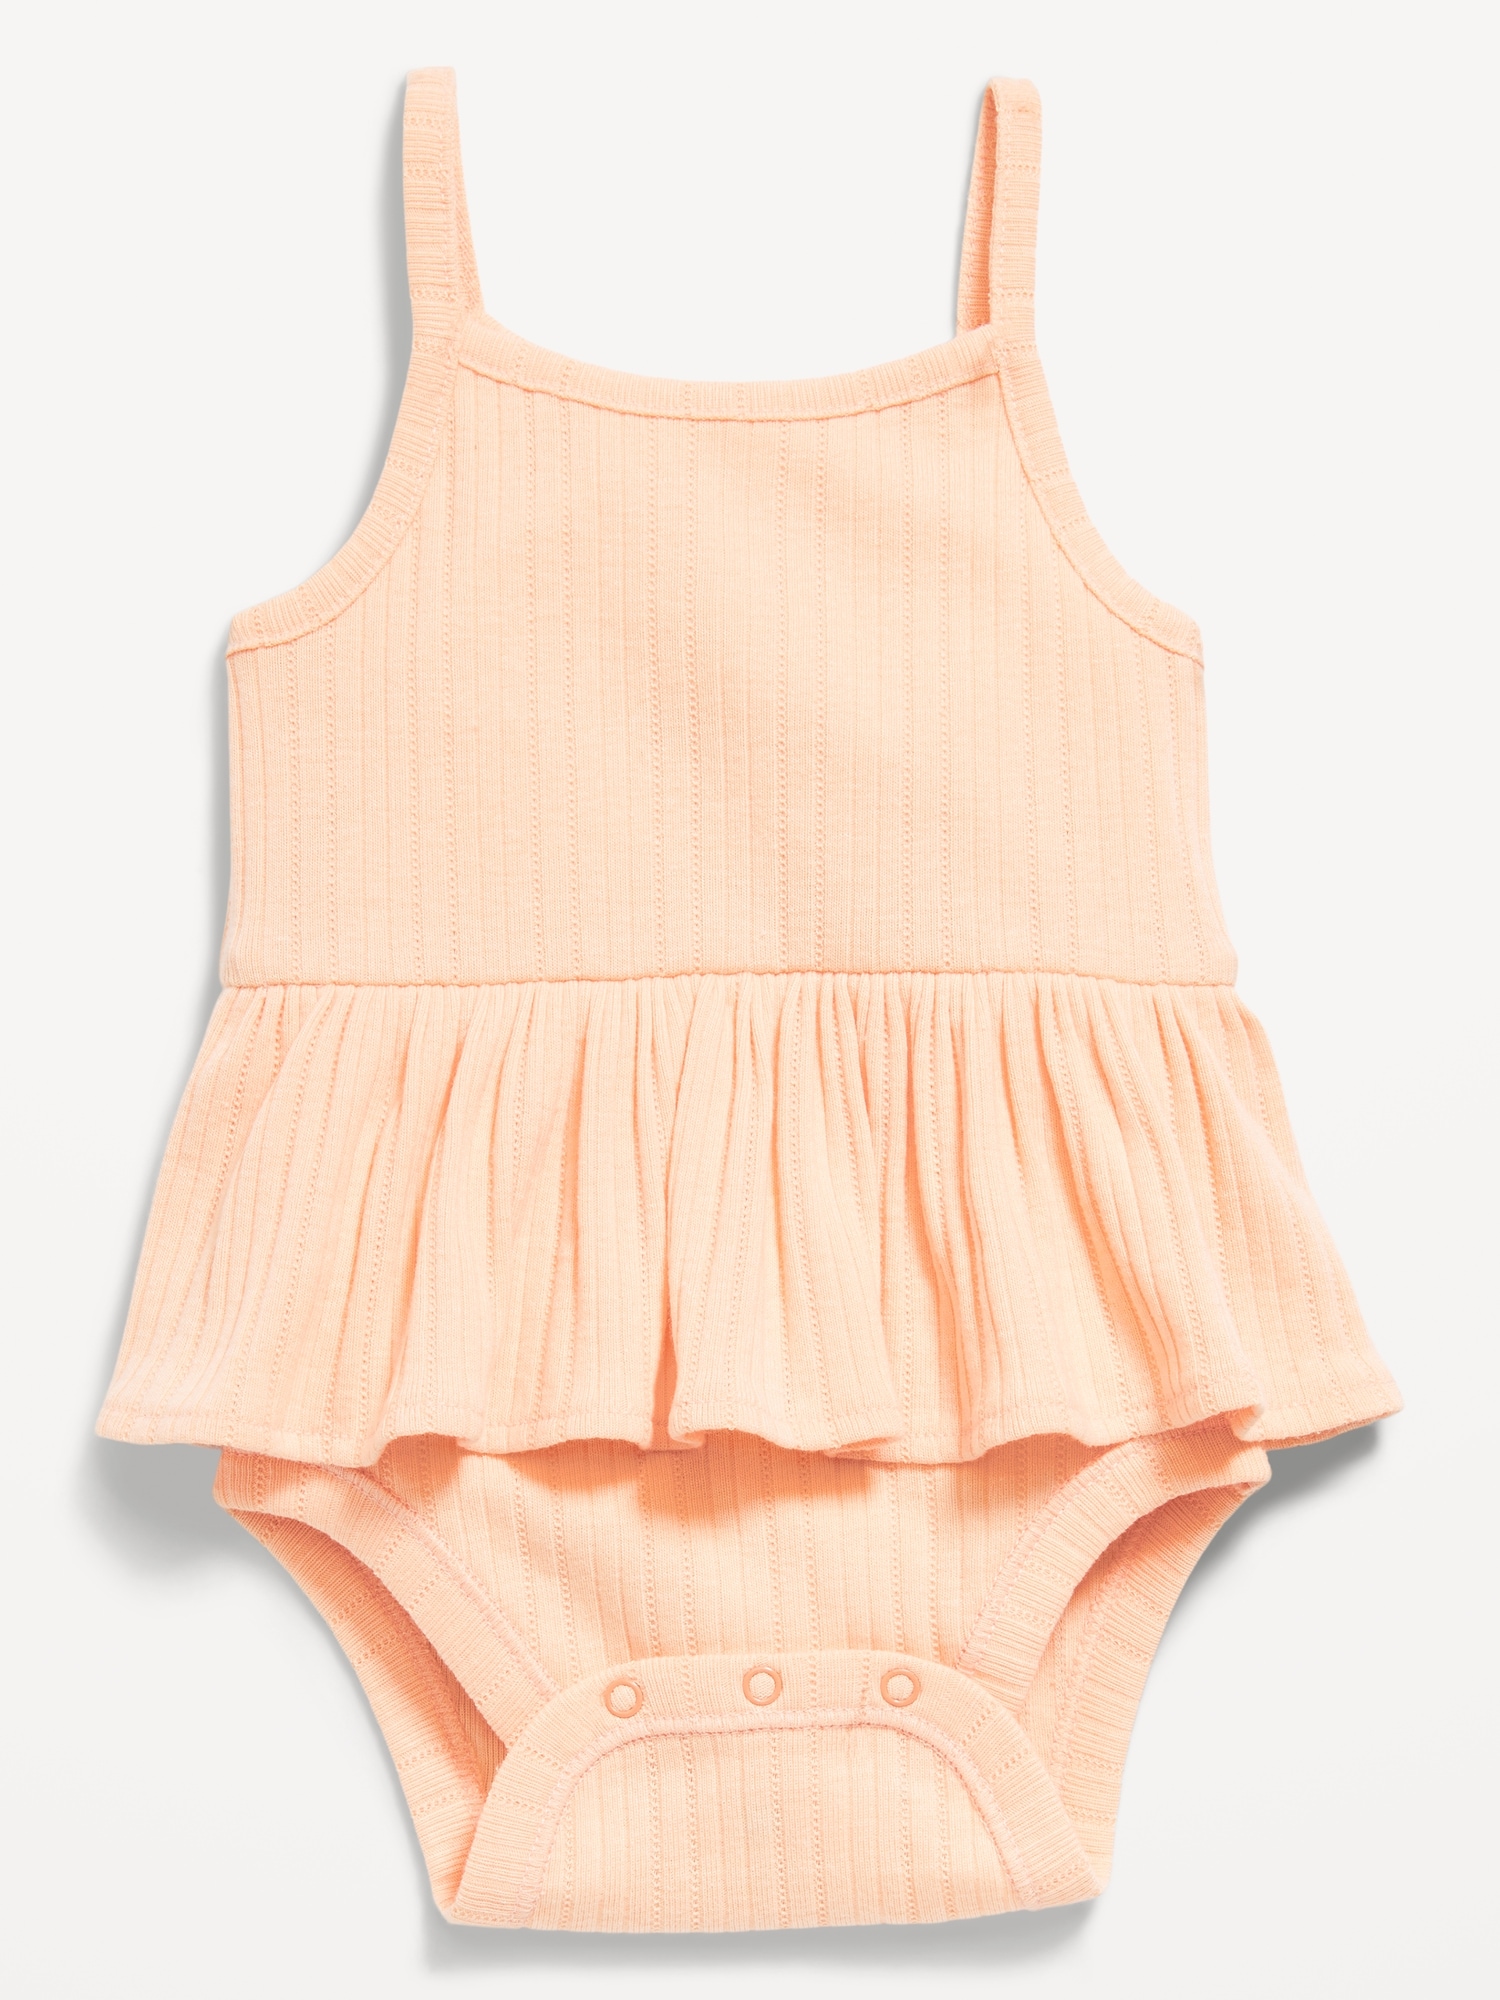 Sleeveless Peplum Bodysuit for Baby Hot Deal